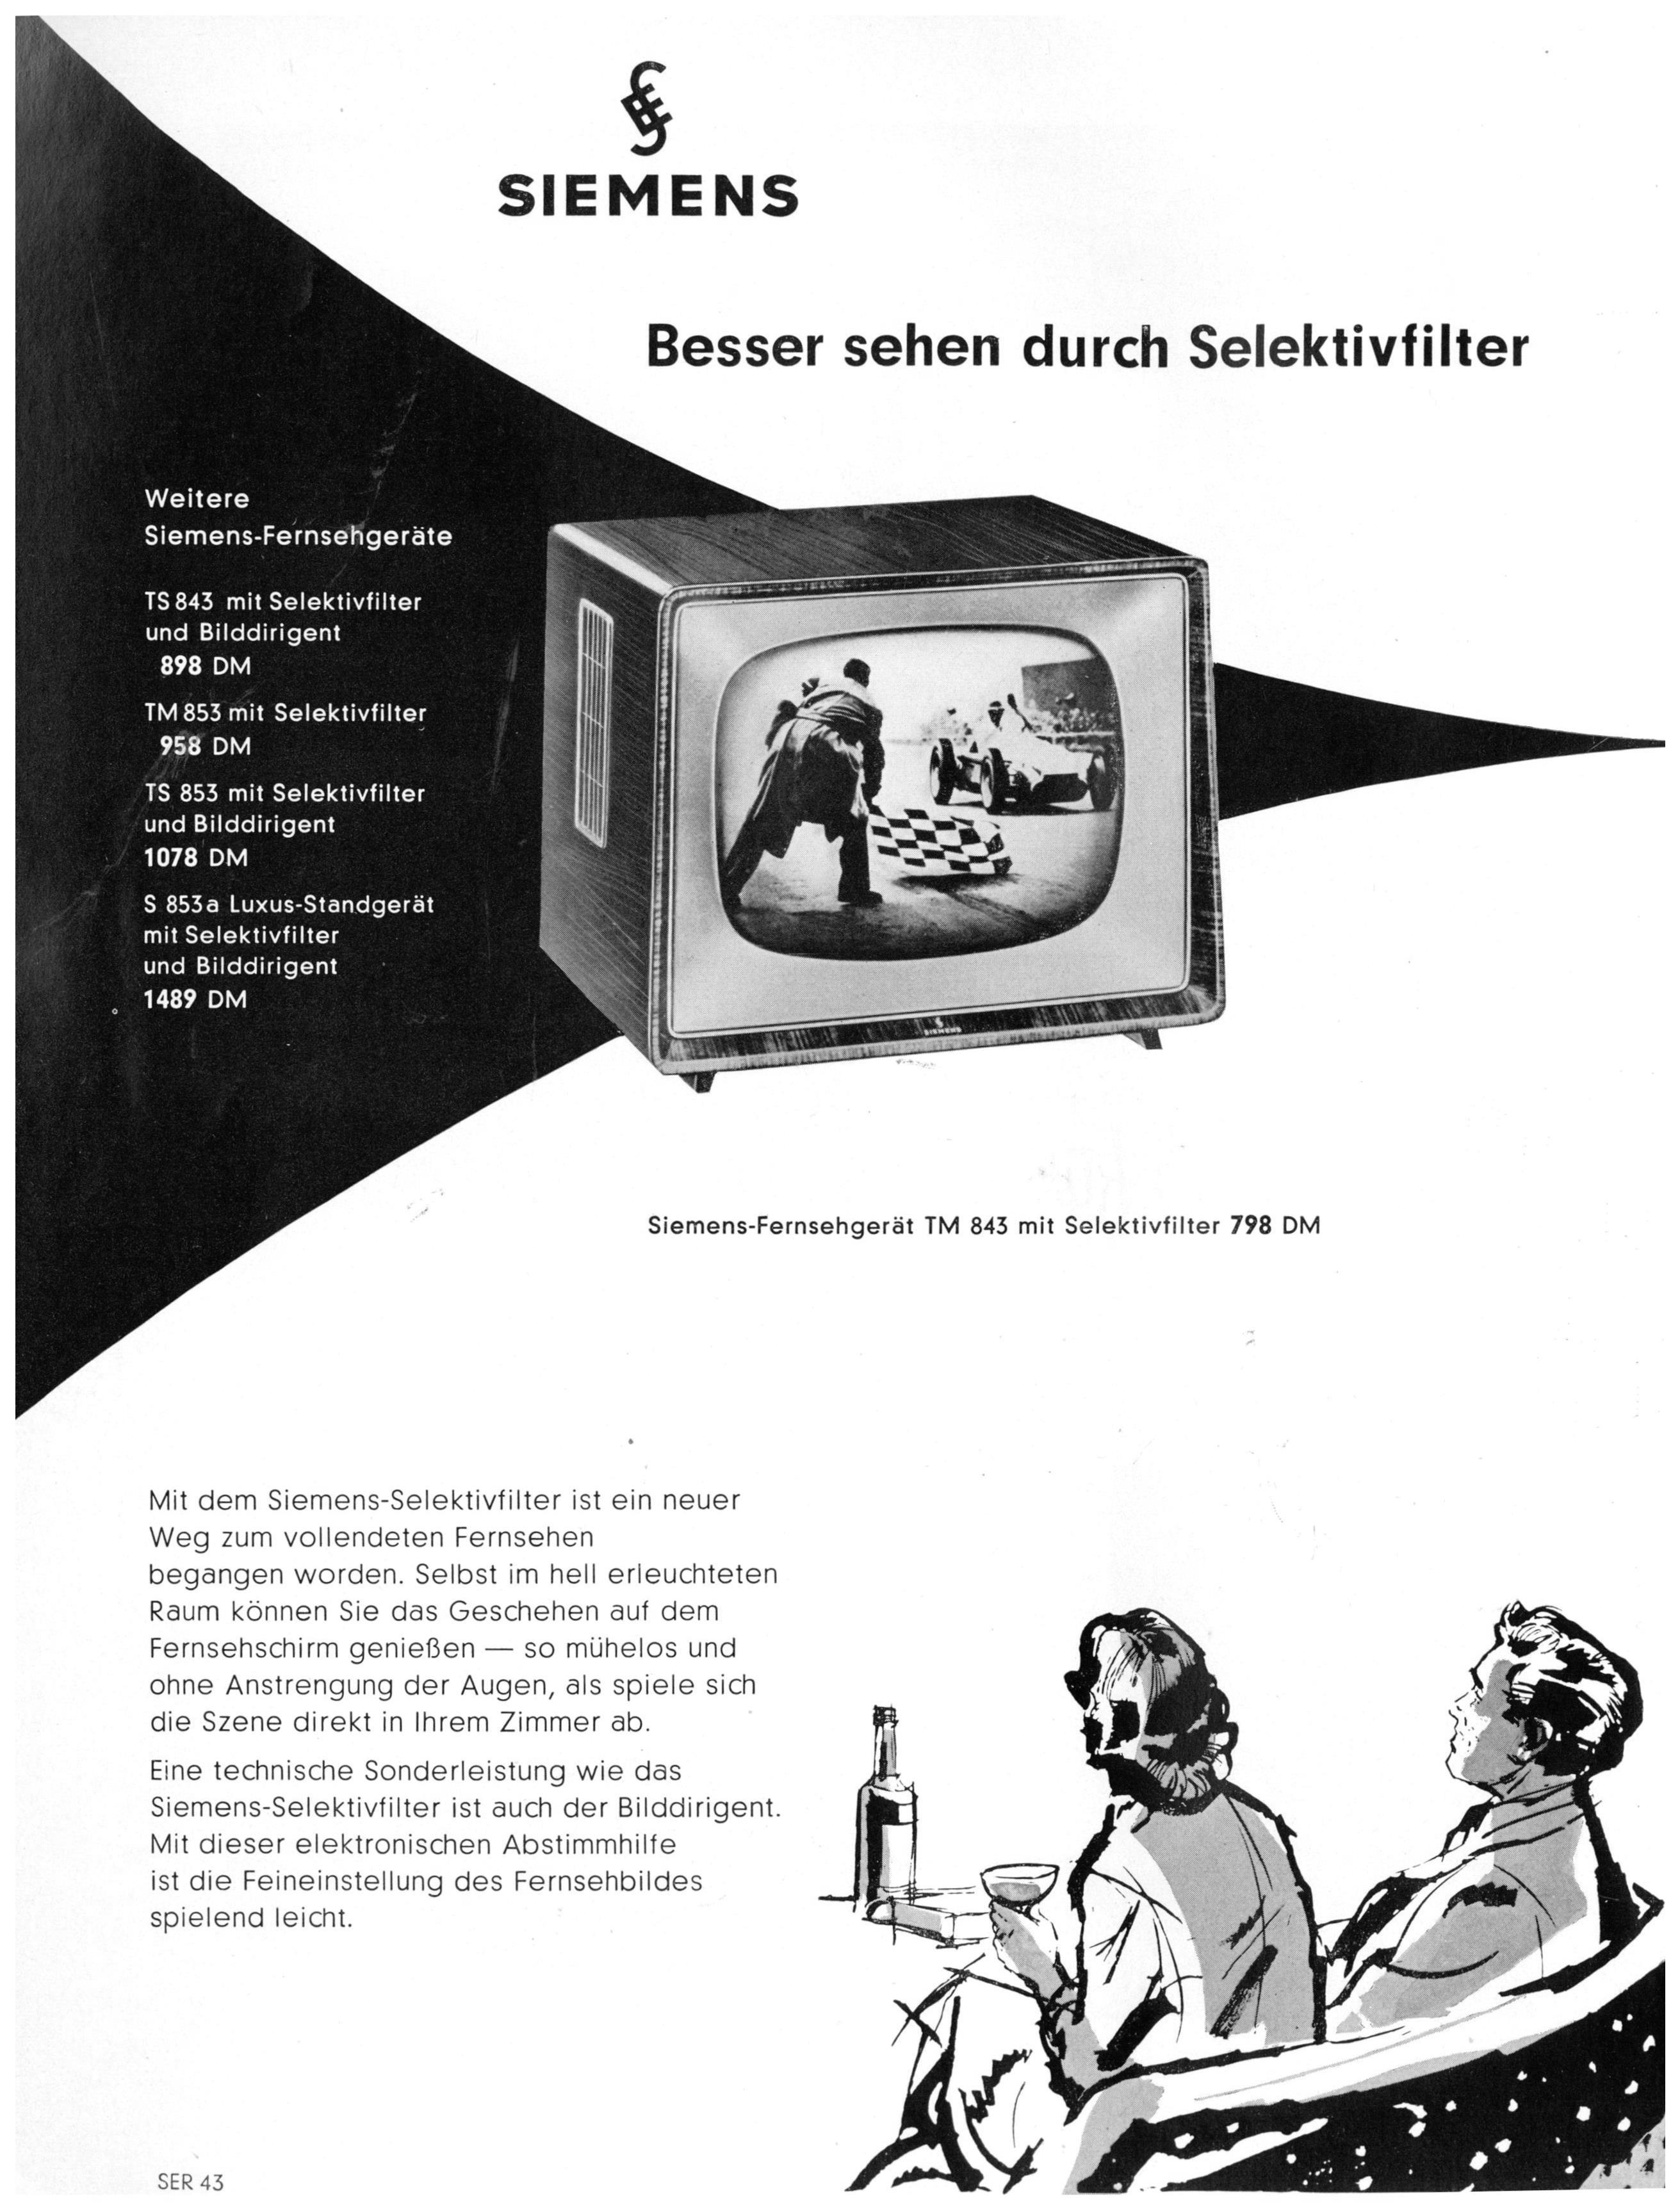 Siemens 1959 1-1.jpg